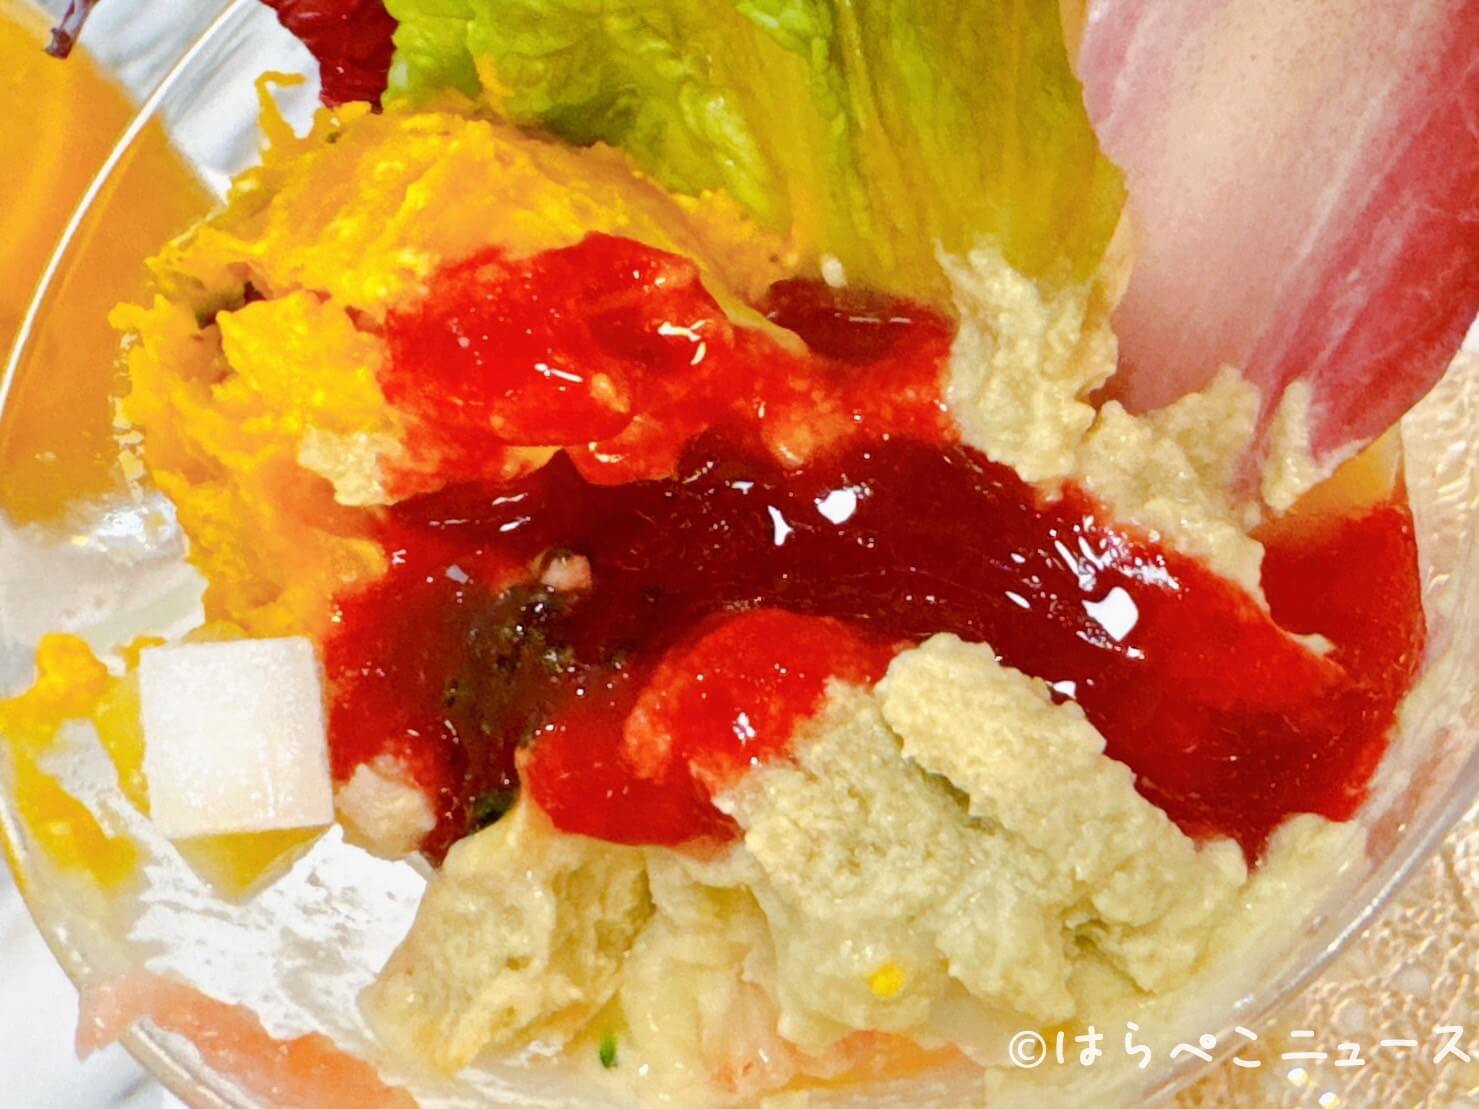 【実食レポ】千疋屋総本店 麻布台ヒルズ店限定「フルーツサラダパフェ」と「マスクメロンショートケーキ」